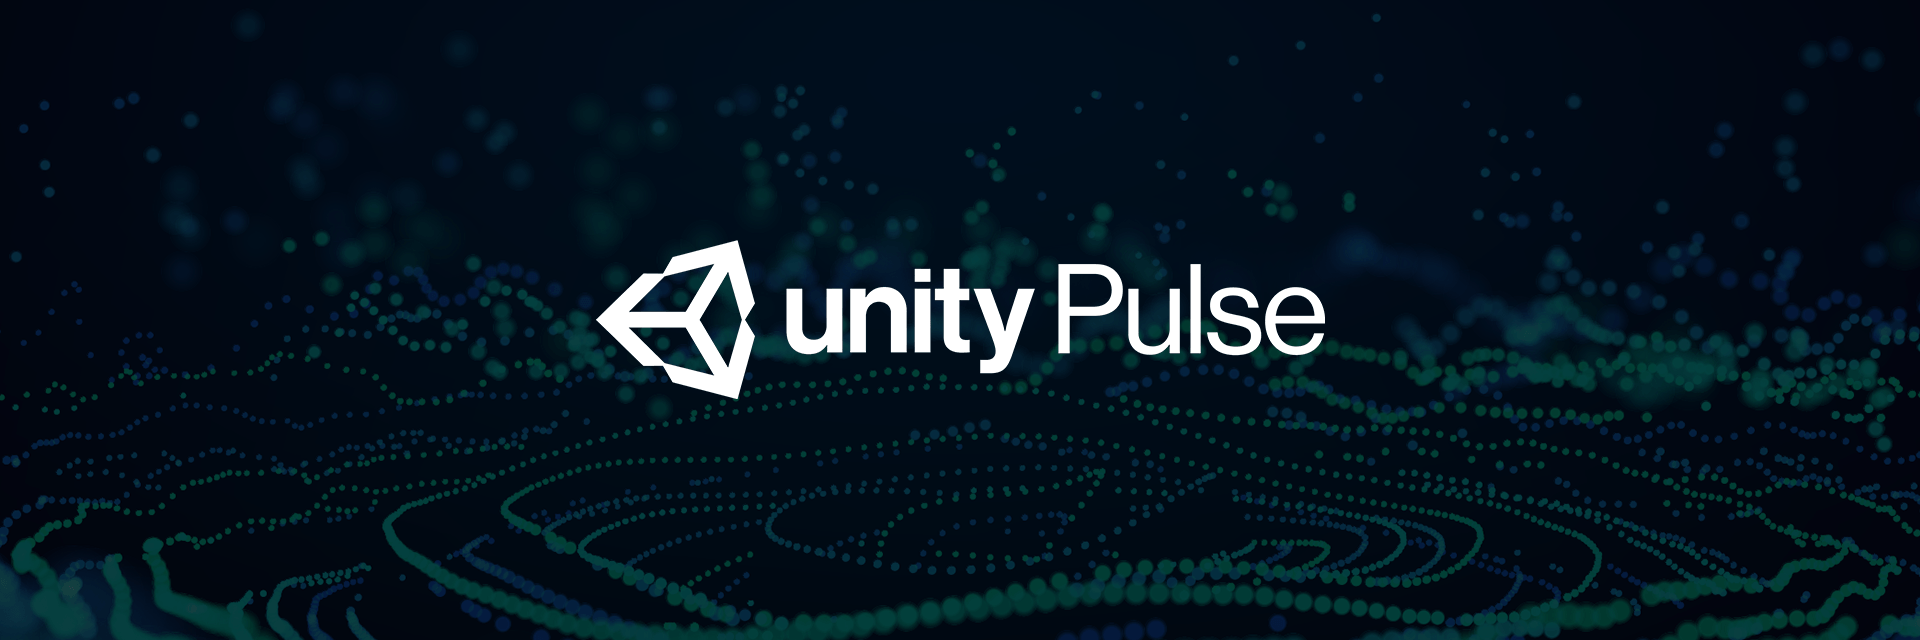 Unity Pulse